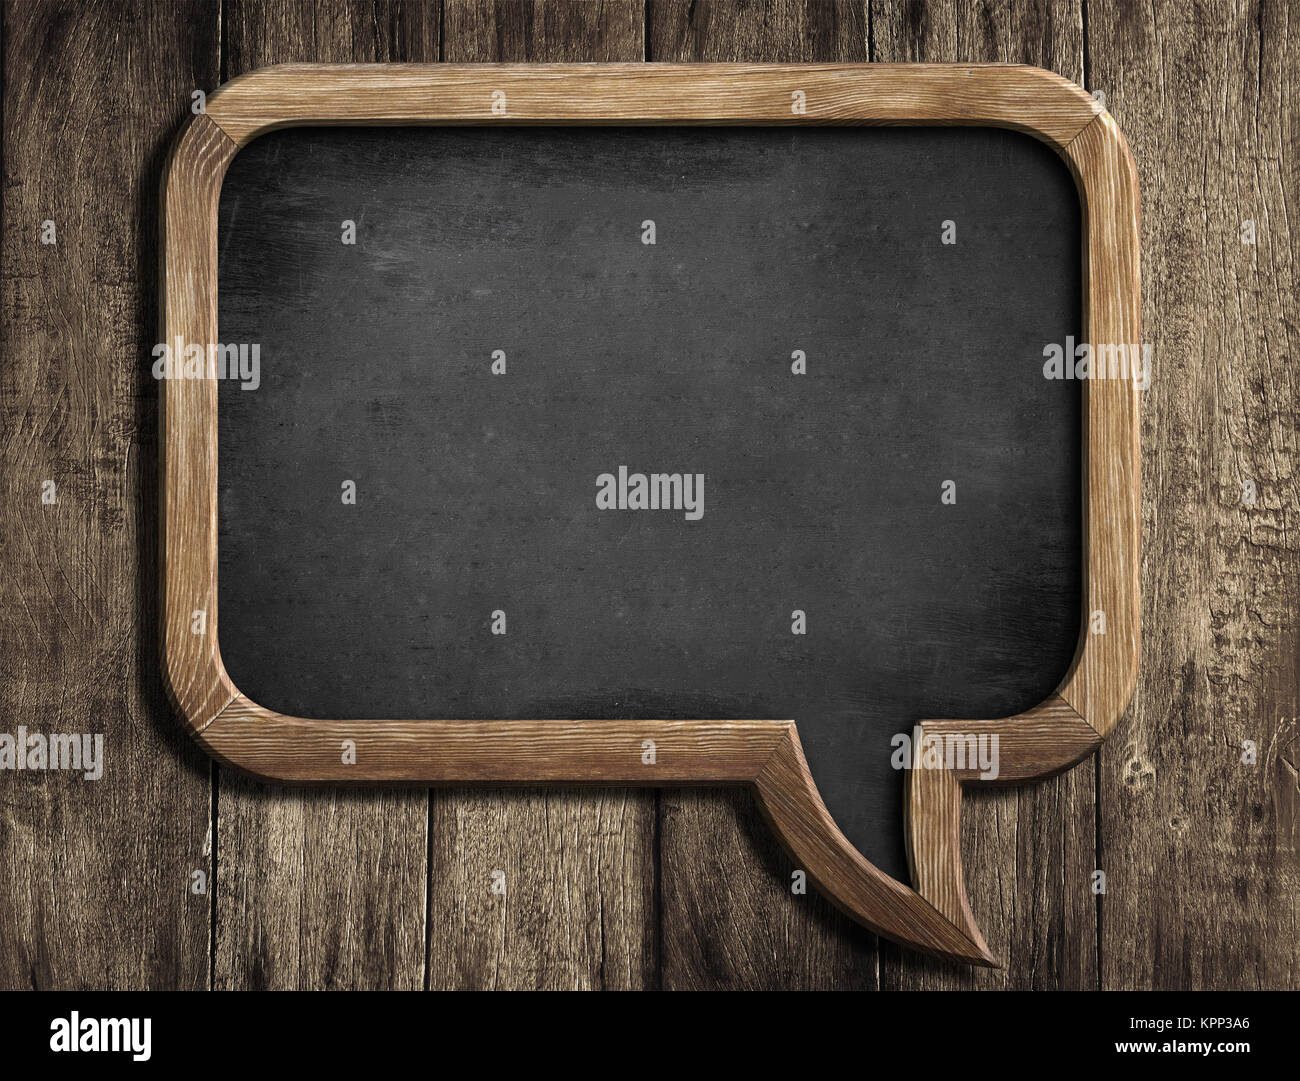 speech bubble chalkboard or blackboard on old wood background Stock Photo